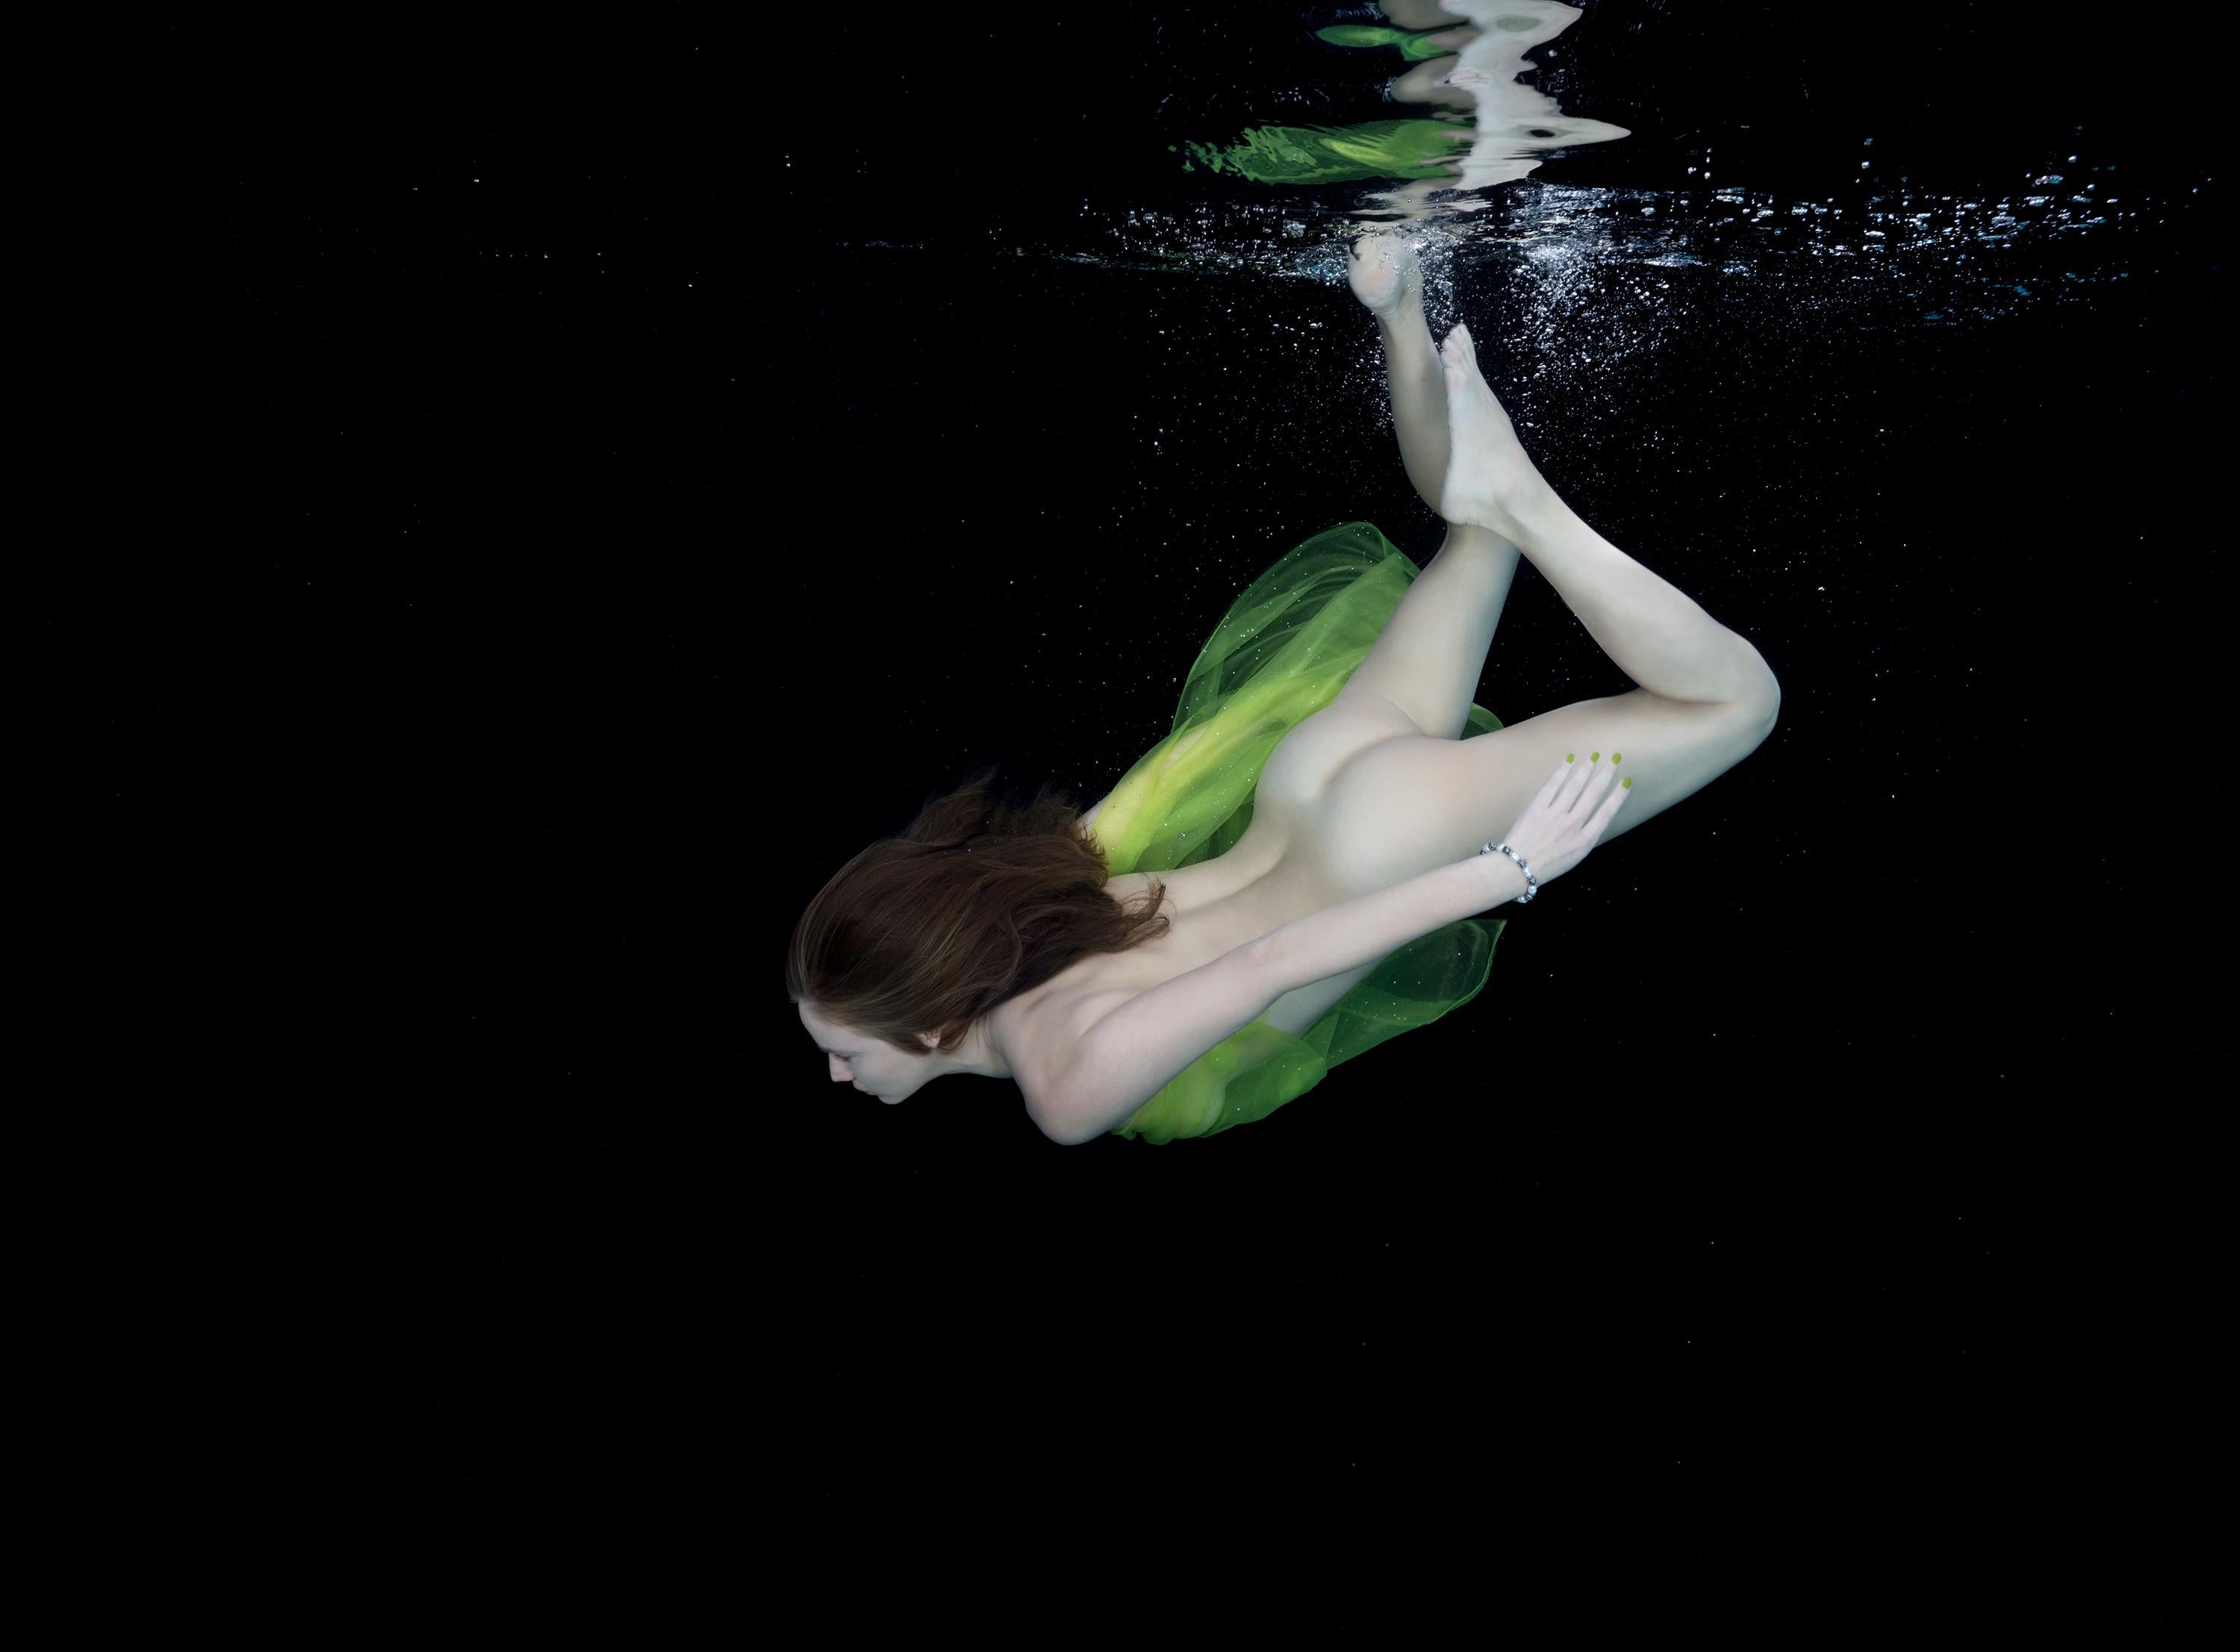 Photographie de nu sous-marine vert - impression pigmentaire d'archives 18" x 24".